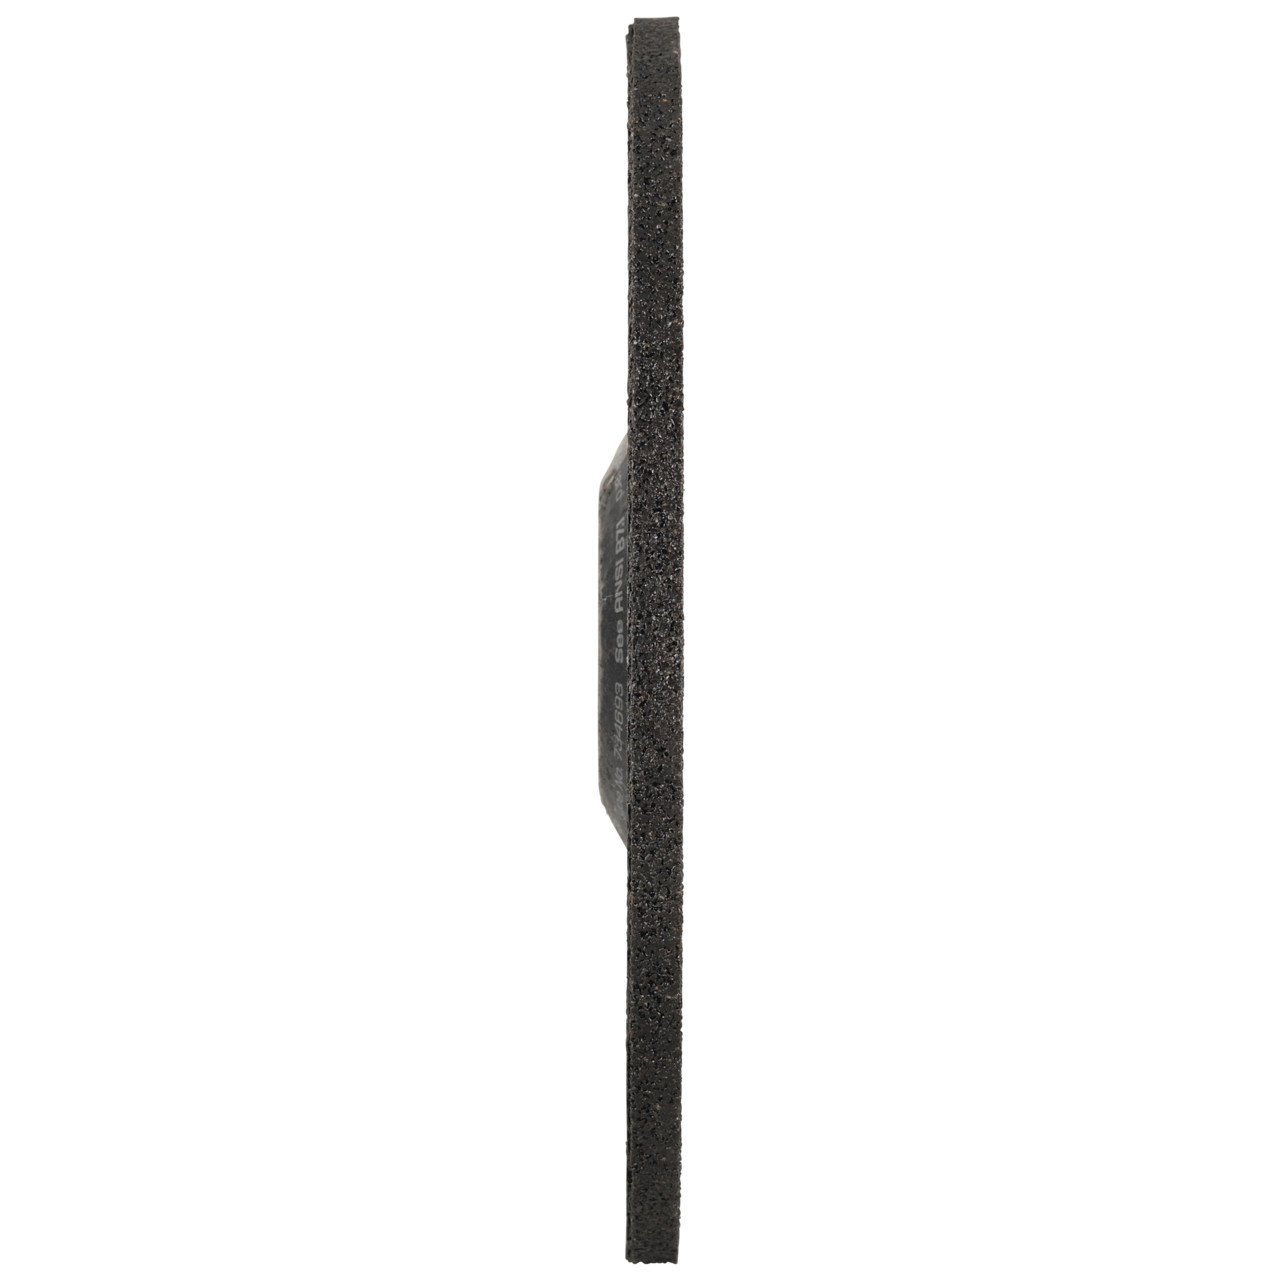 TYROLIT Schruppscheibe DxUxH 178x6x22,23 FASTCUT Basic für Stahl und Edelstahl, Form: 27C - gekröpfte Ausführung, Art. 34468719